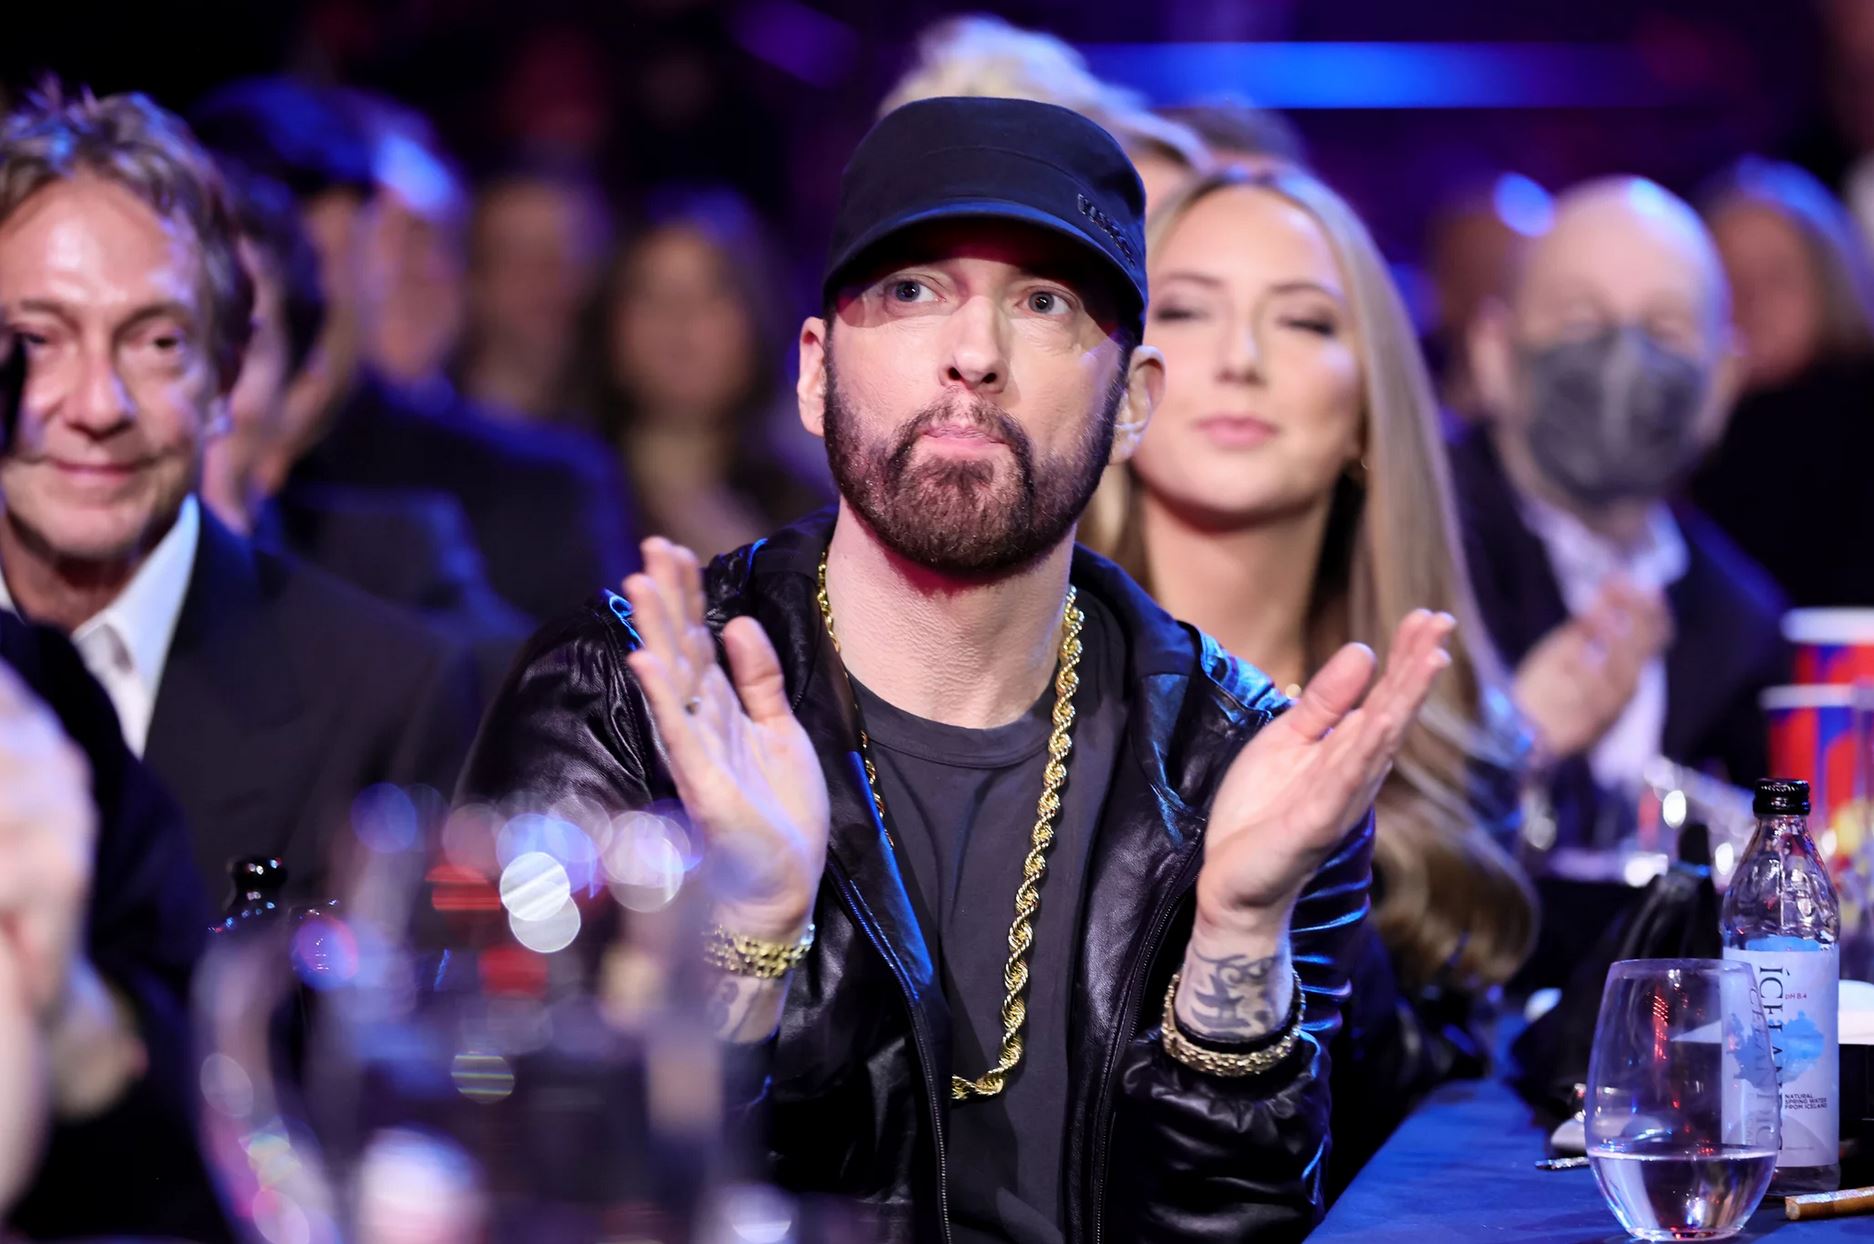 Eminem : Hailie, la fille du célèbre rappeur, annonce ses fiançailles !